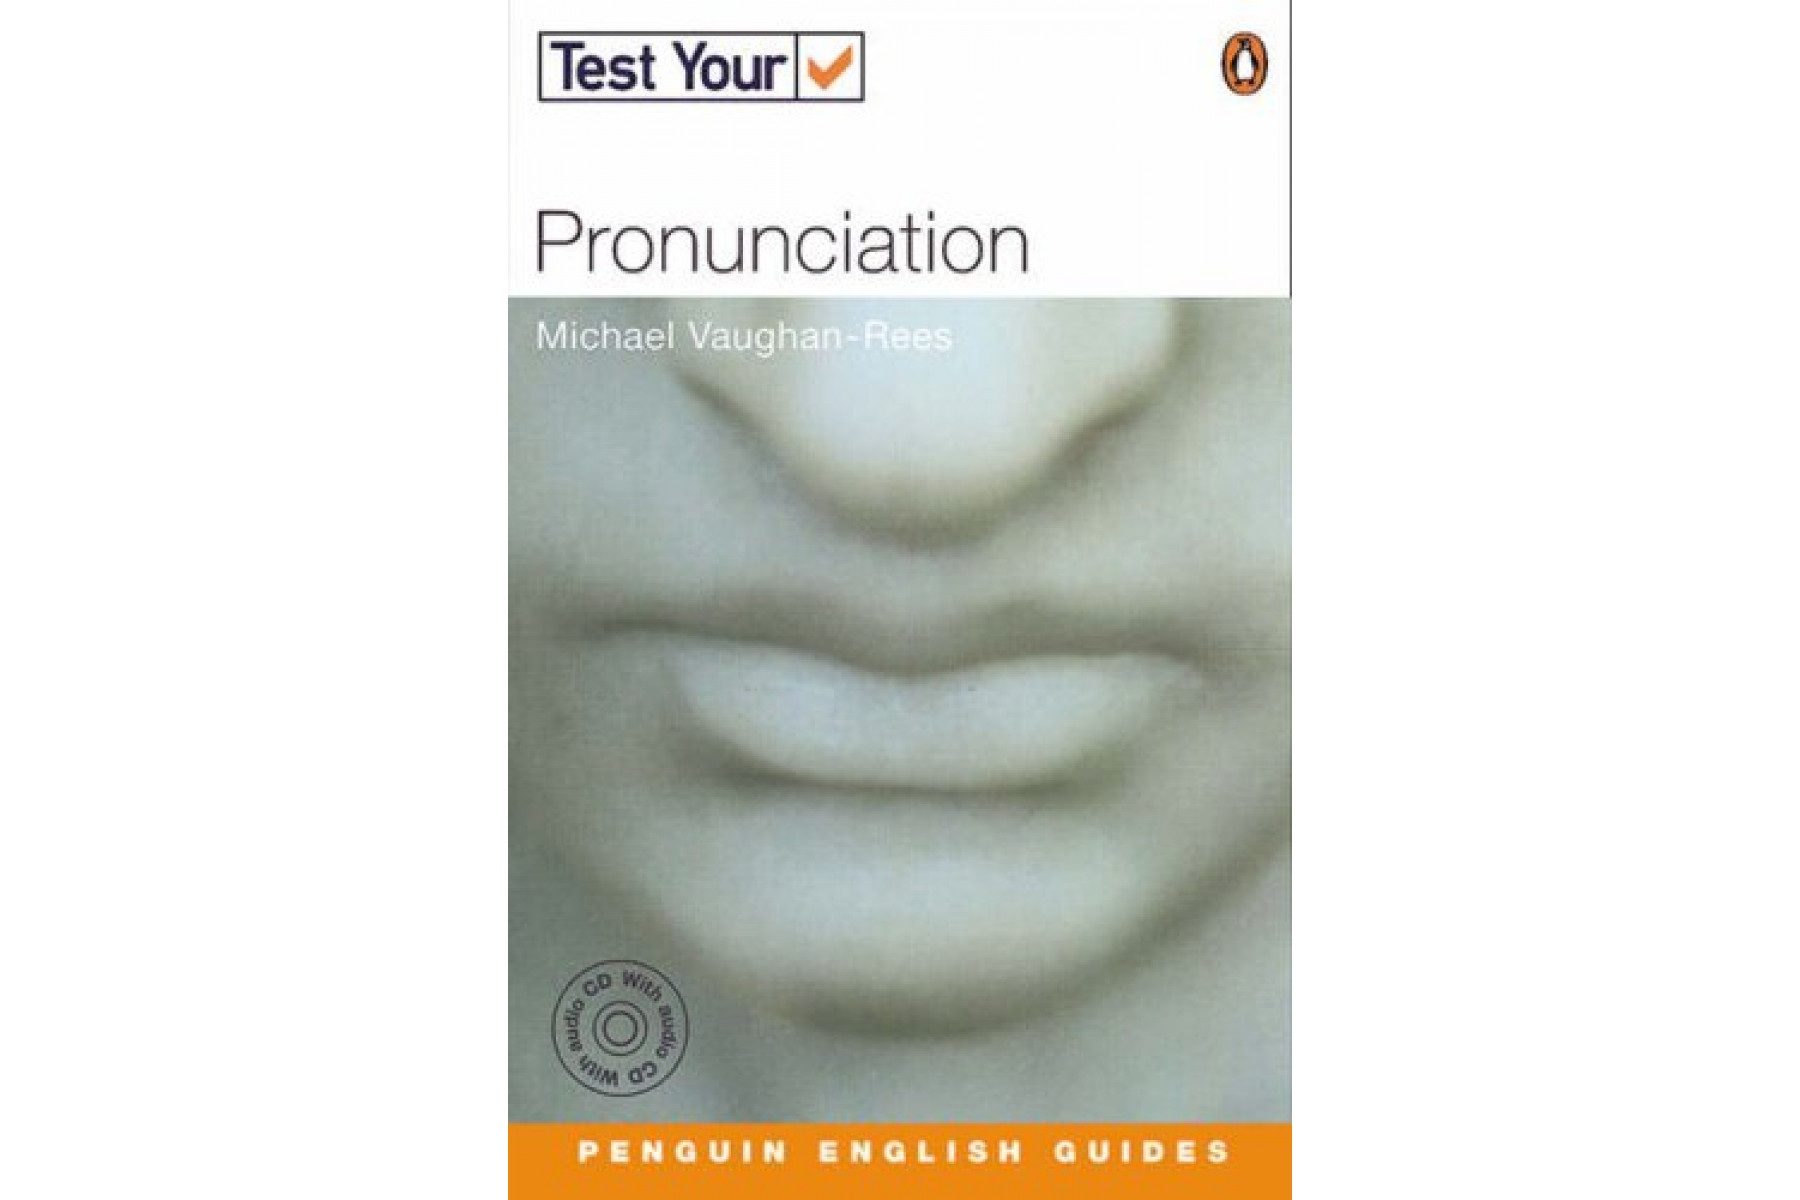 Test Your: Pronunciation